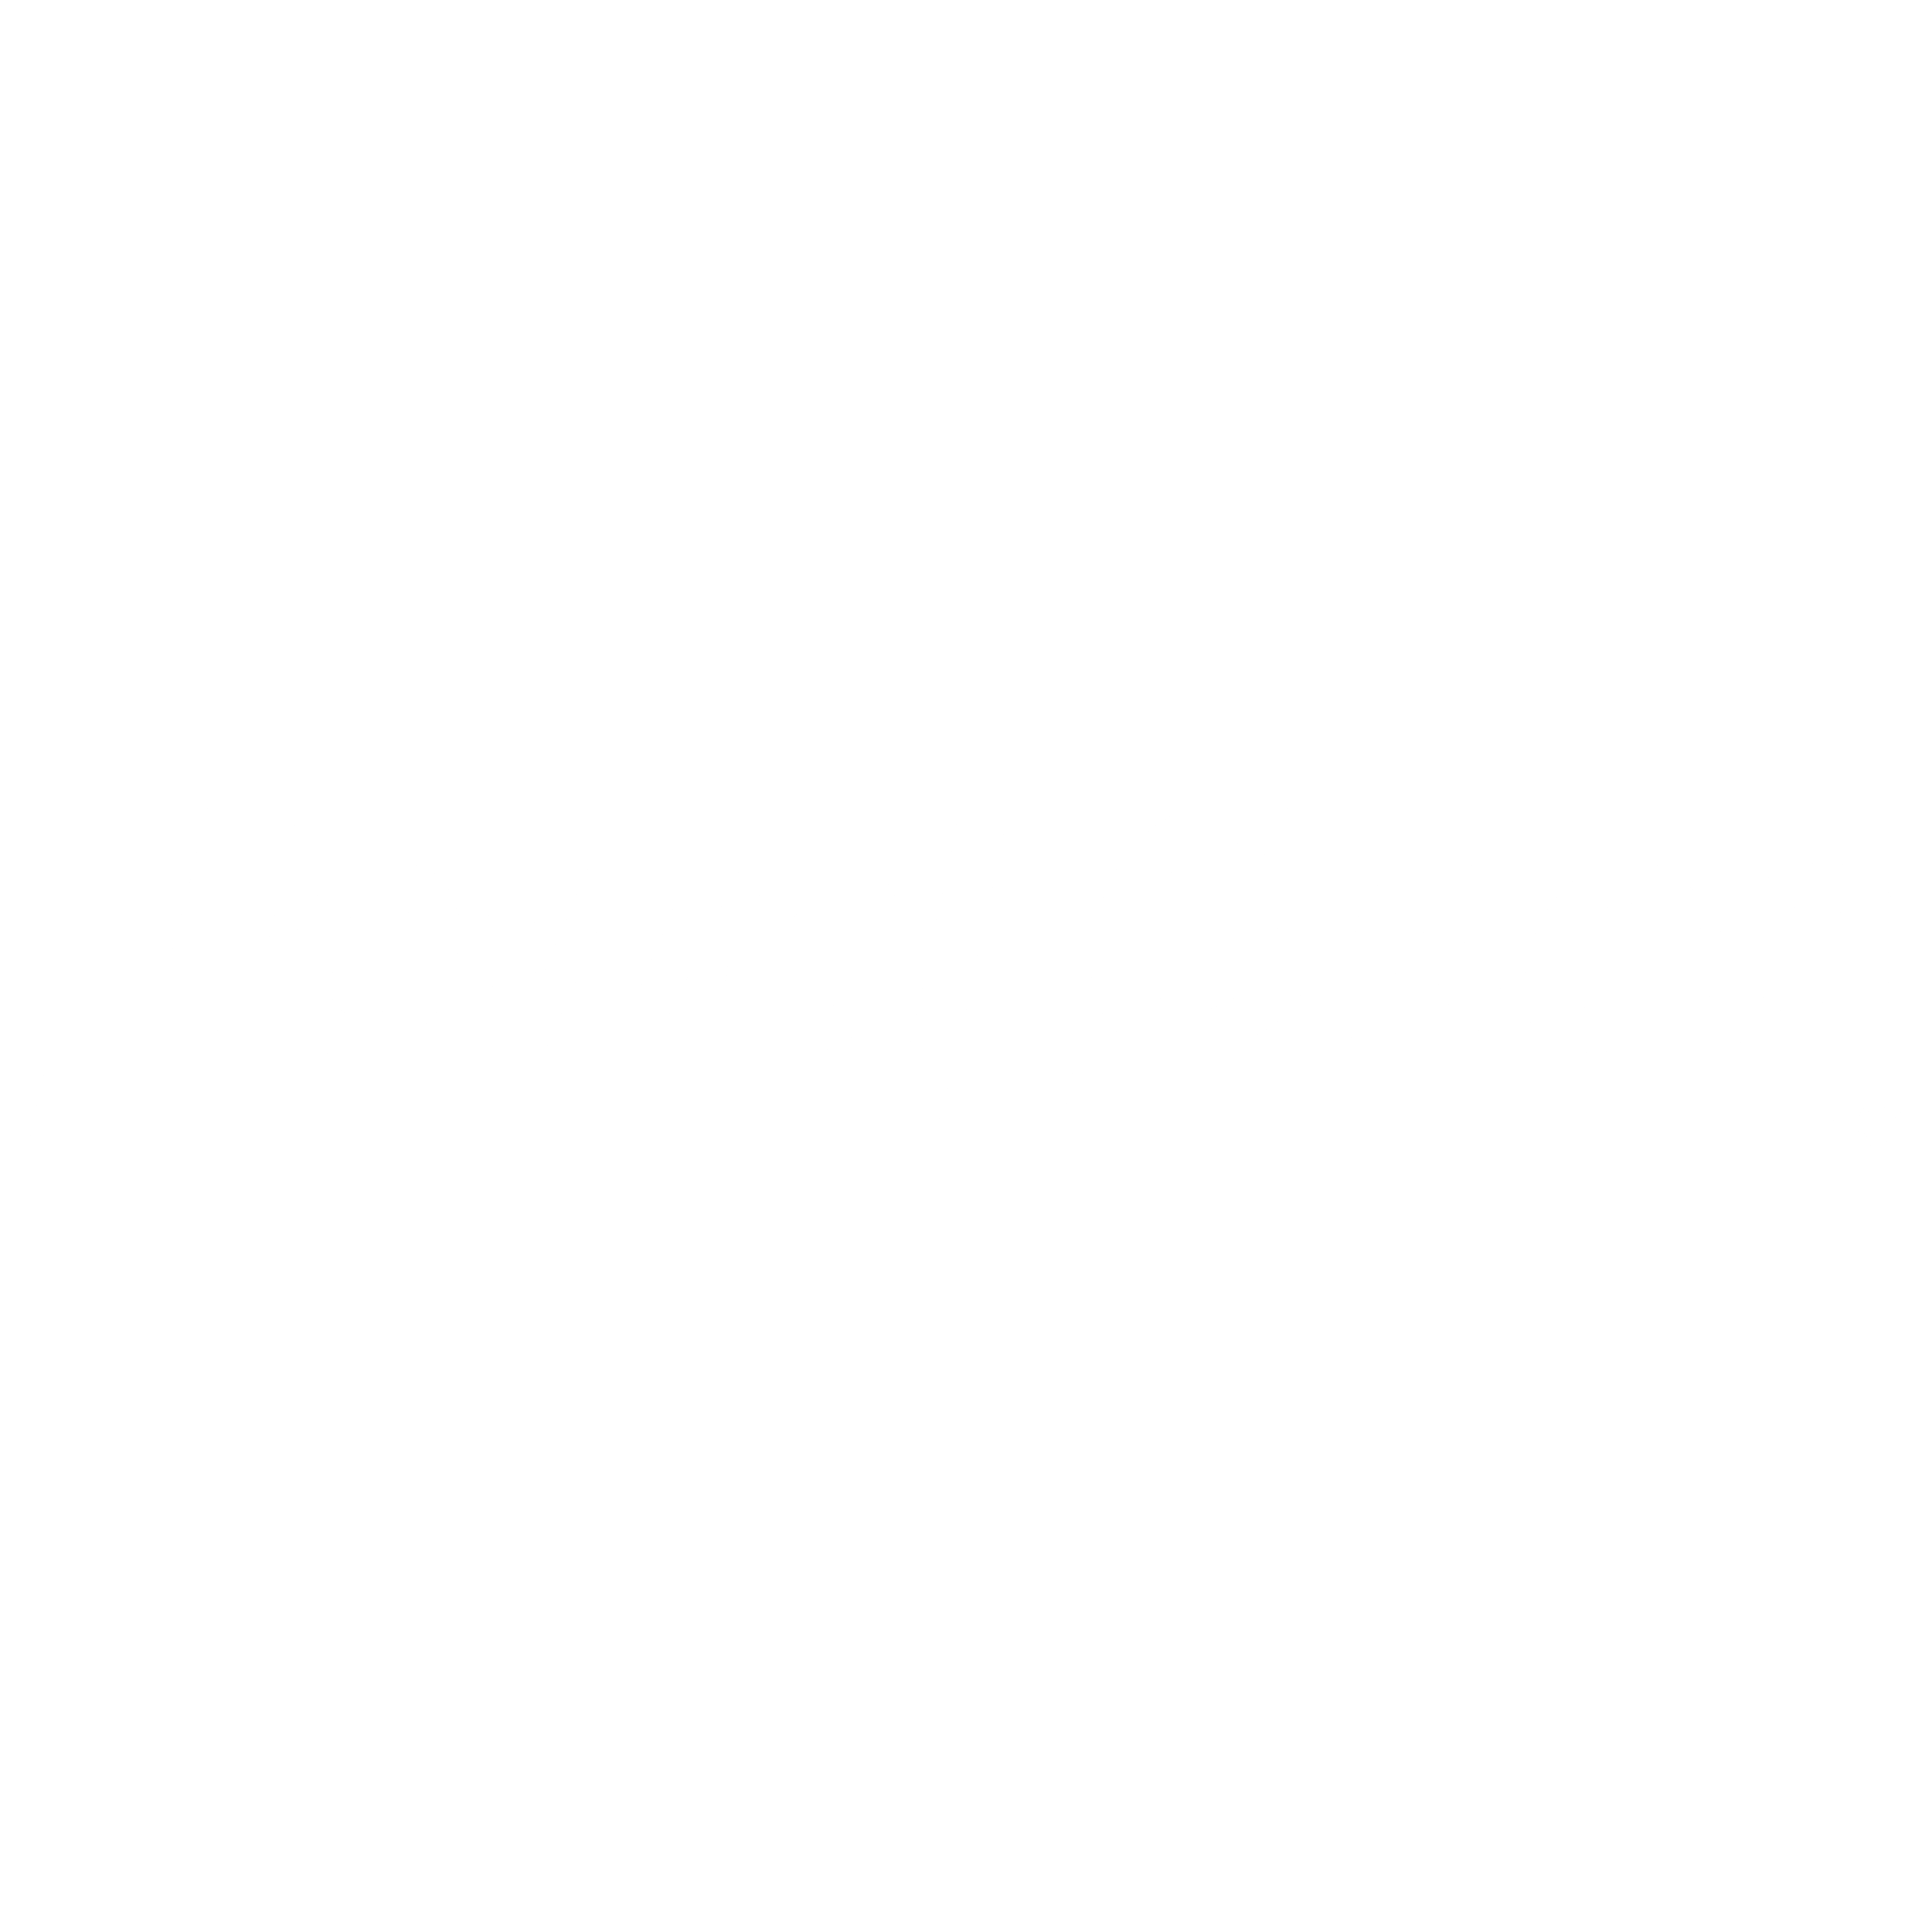 Jewel-Osco Logo - Jewel Osco Logo PNG Transparent & SVG Vector - Freebie Supply